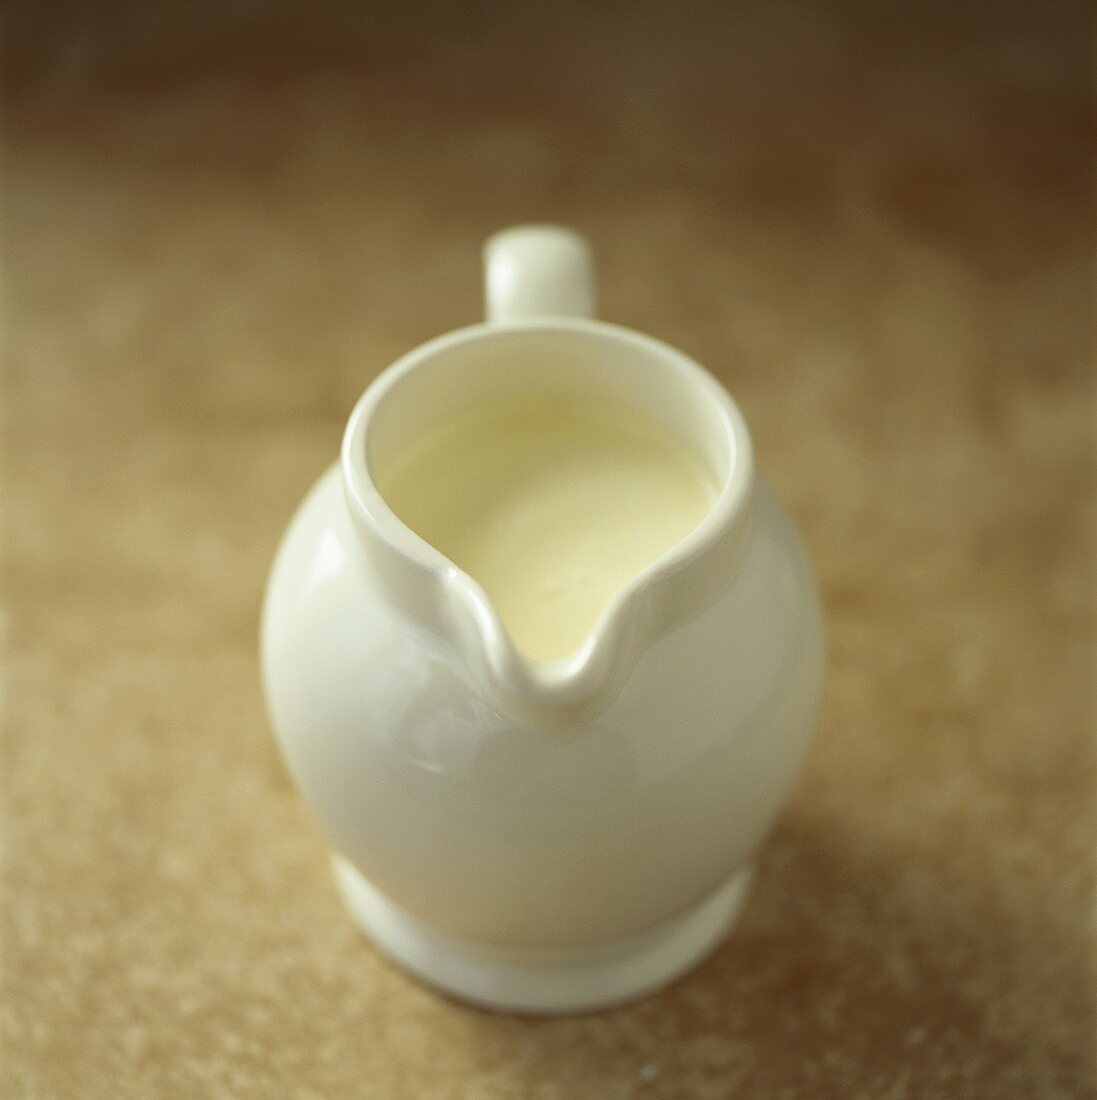 Cream in small white jug